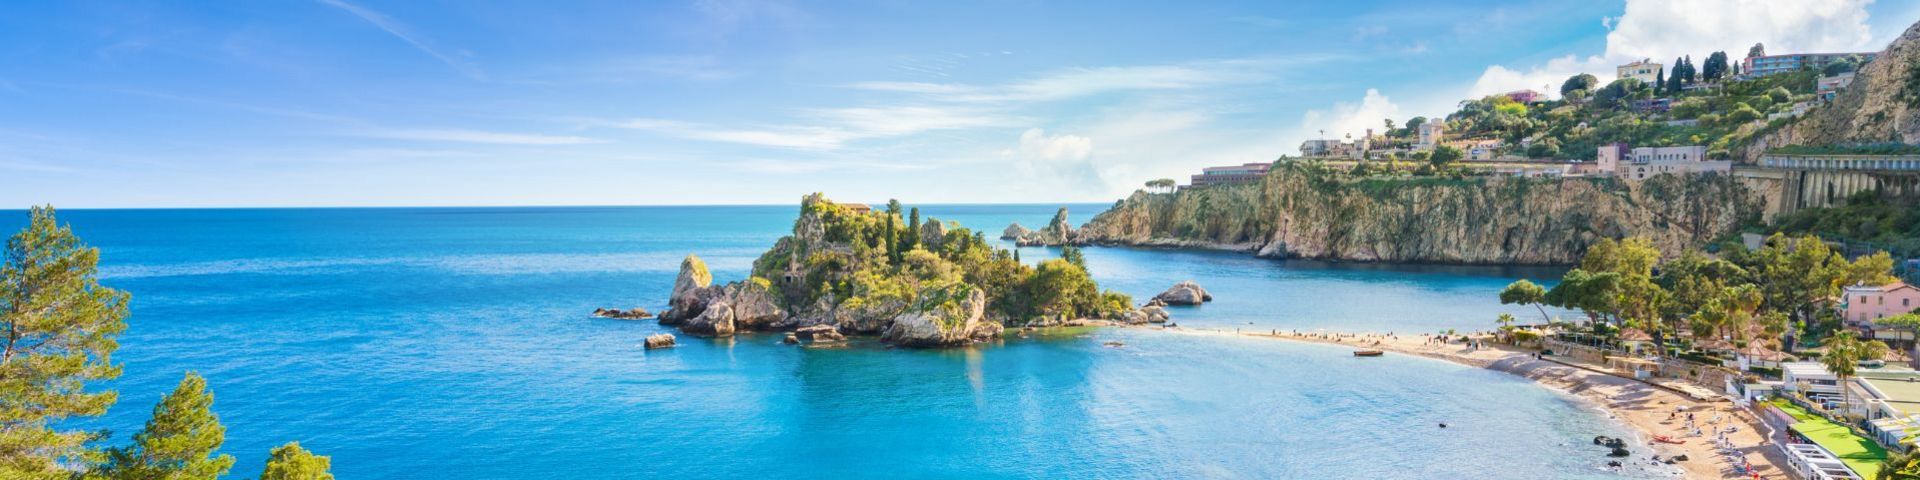 Isola Bella bei einer Sizilien Reise mit sz-Reisen